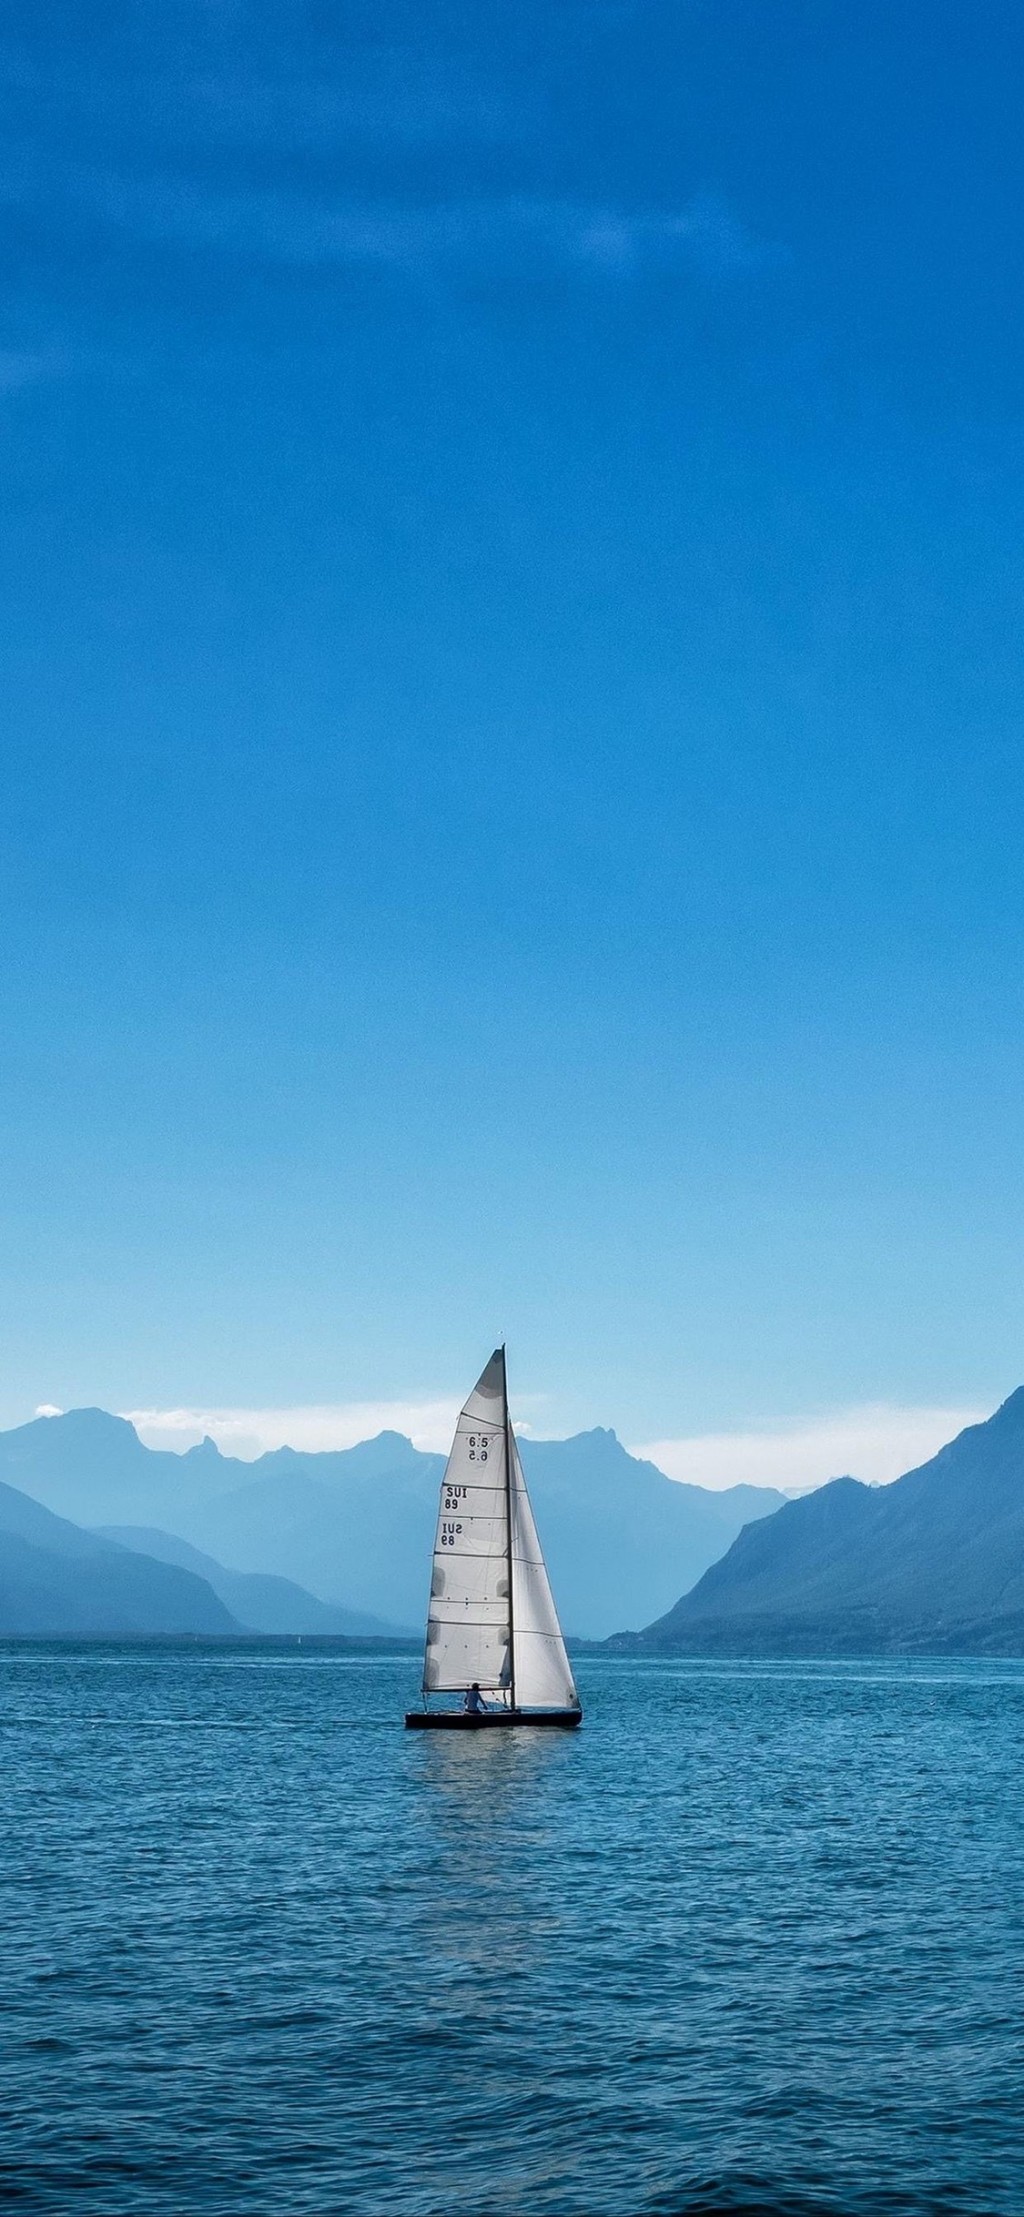 帆船唯美风景手机壁纸